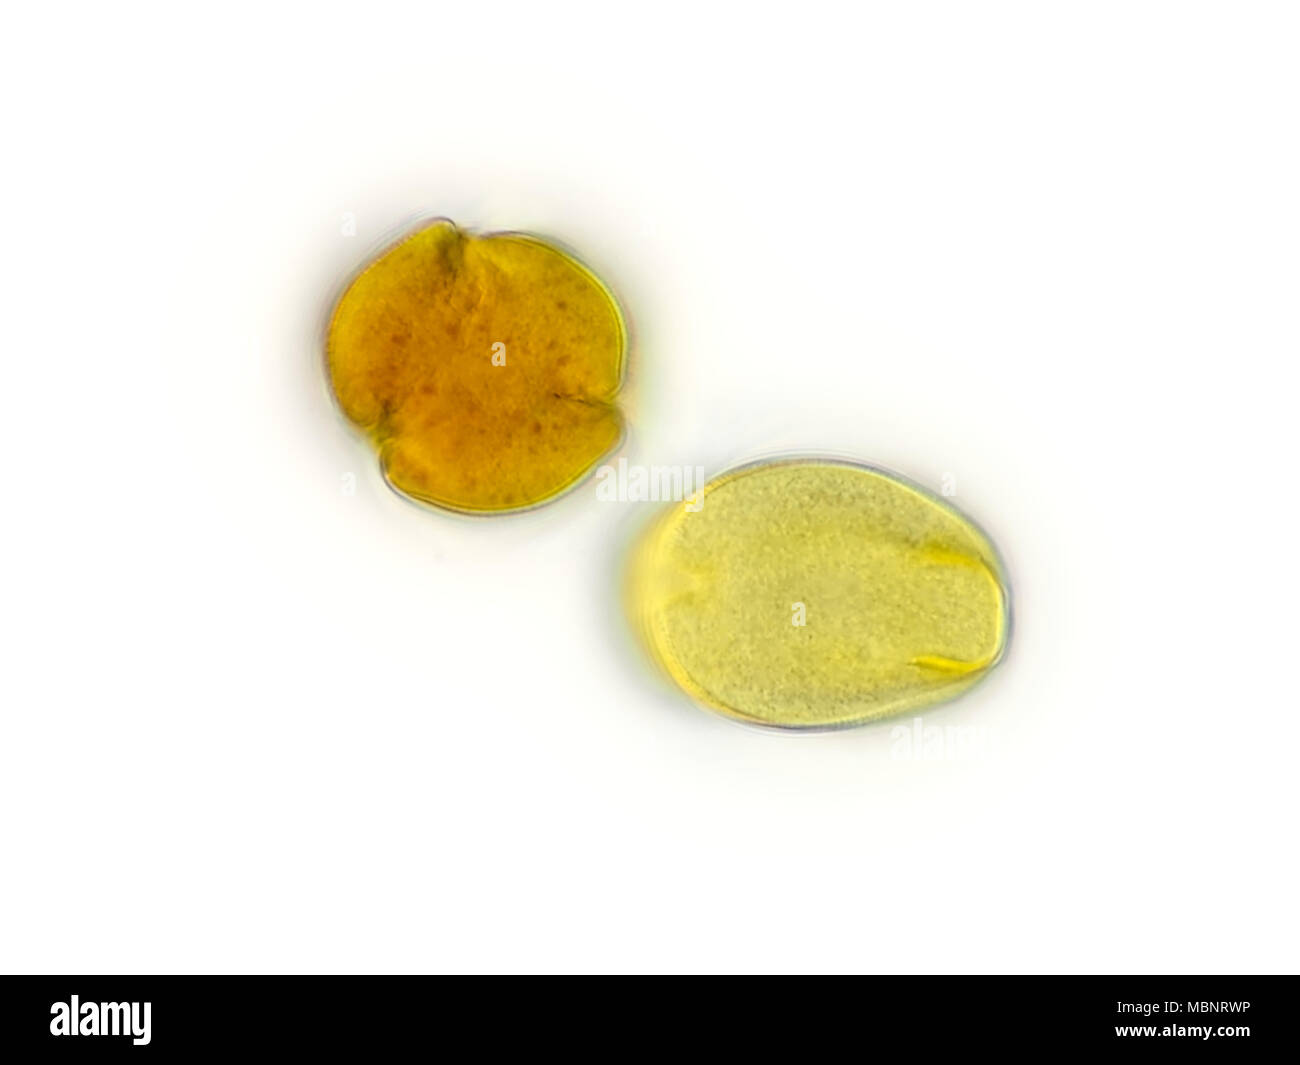 Leichte Aufnahme von 2 unterschiedlich orientierten Pollenkörner (wahrscheinlich Obst Baum Pollen) von einer Probe, dargestellt Fläche ist etwa 170 Mikrometer breit Stockfoto